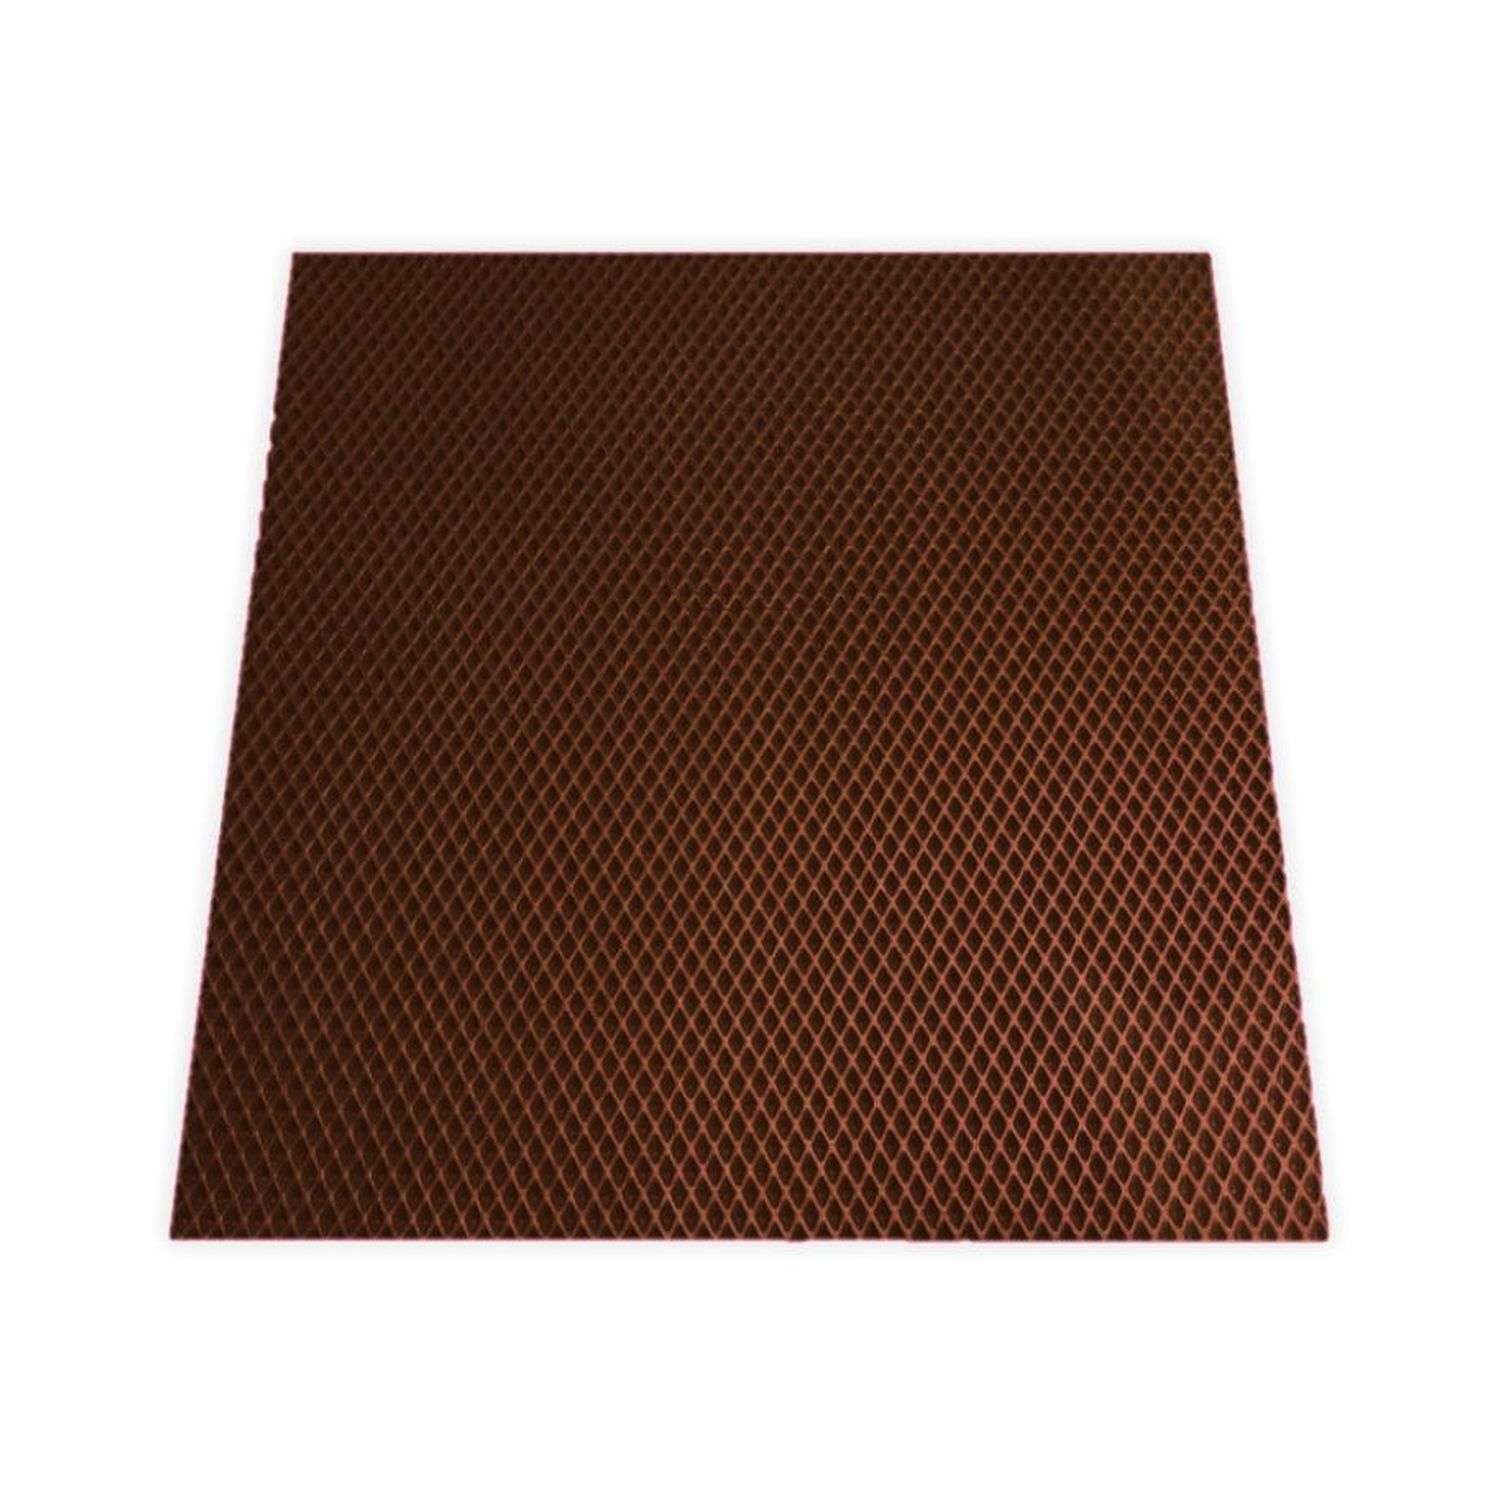 Коврик Rabizy универсальный коричневый 65х70 см - фото 1